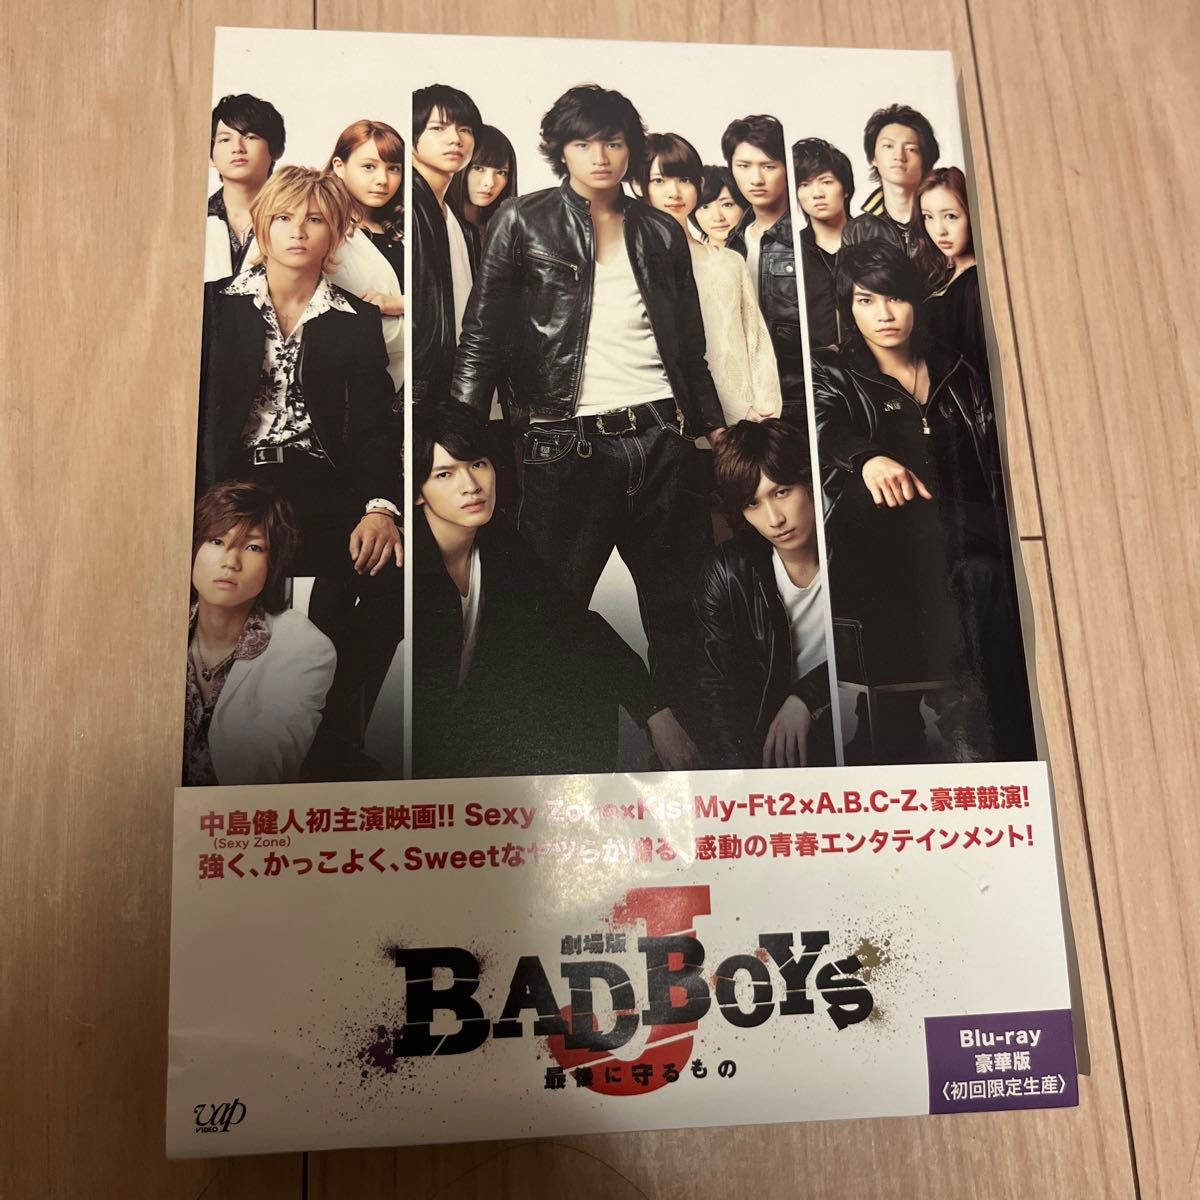 劇場版 「BAD BOYS J -最後に守るもの-」 BD豪華版 (初回限定生産) [Blu-ray]